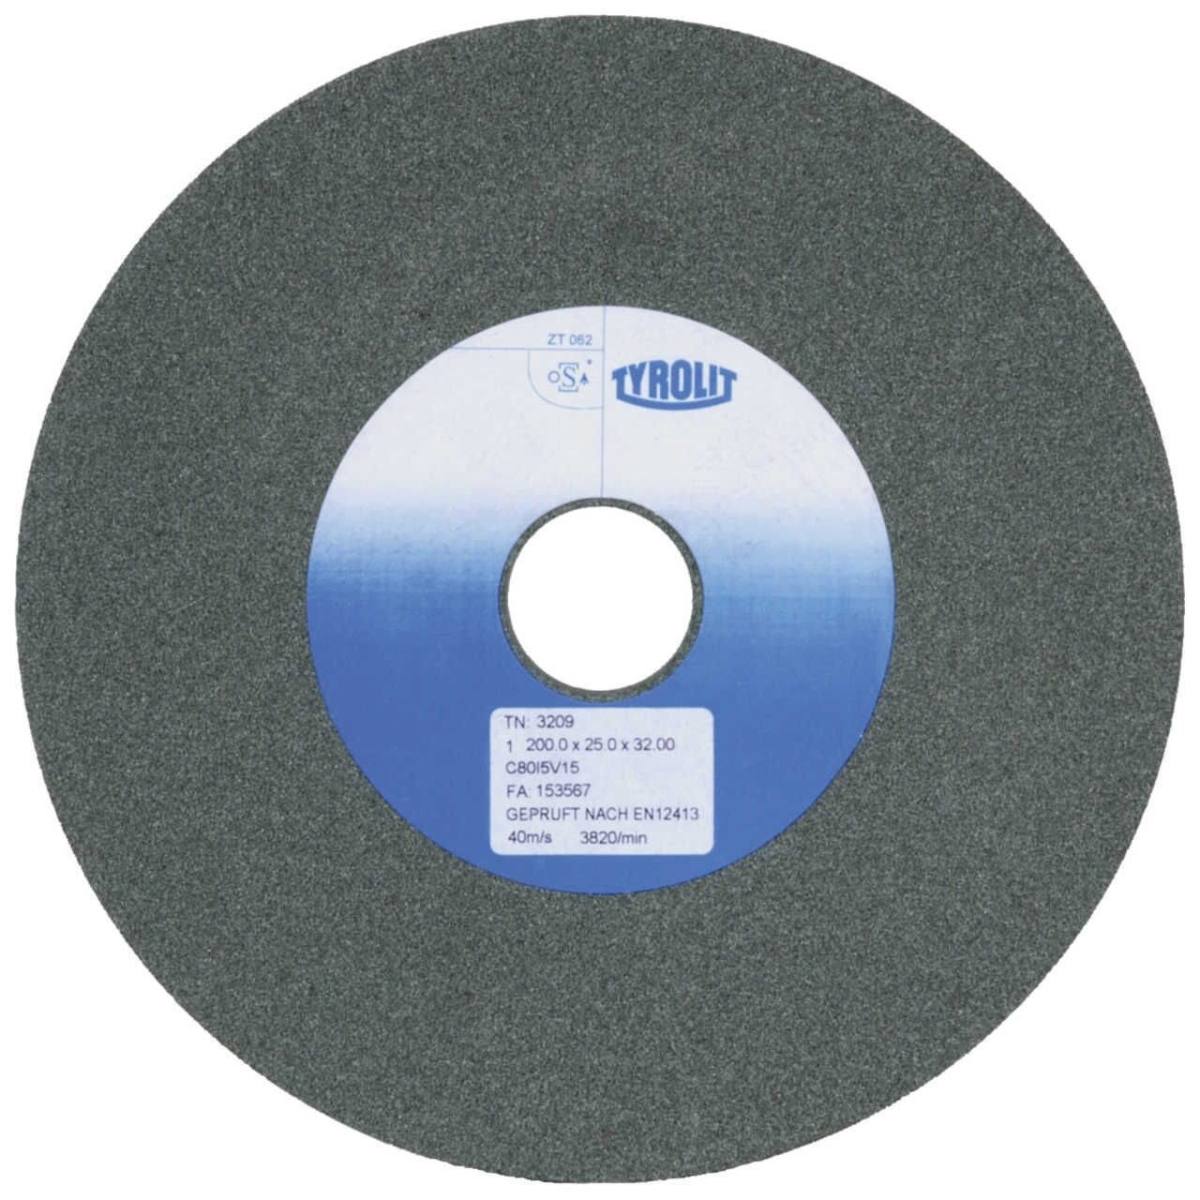 TYROLIT dischi abrasivi in ceramica convenzionali DxDxH 150x25x32 Per metalli non ferrosi, forma: 1, Art. 34287484